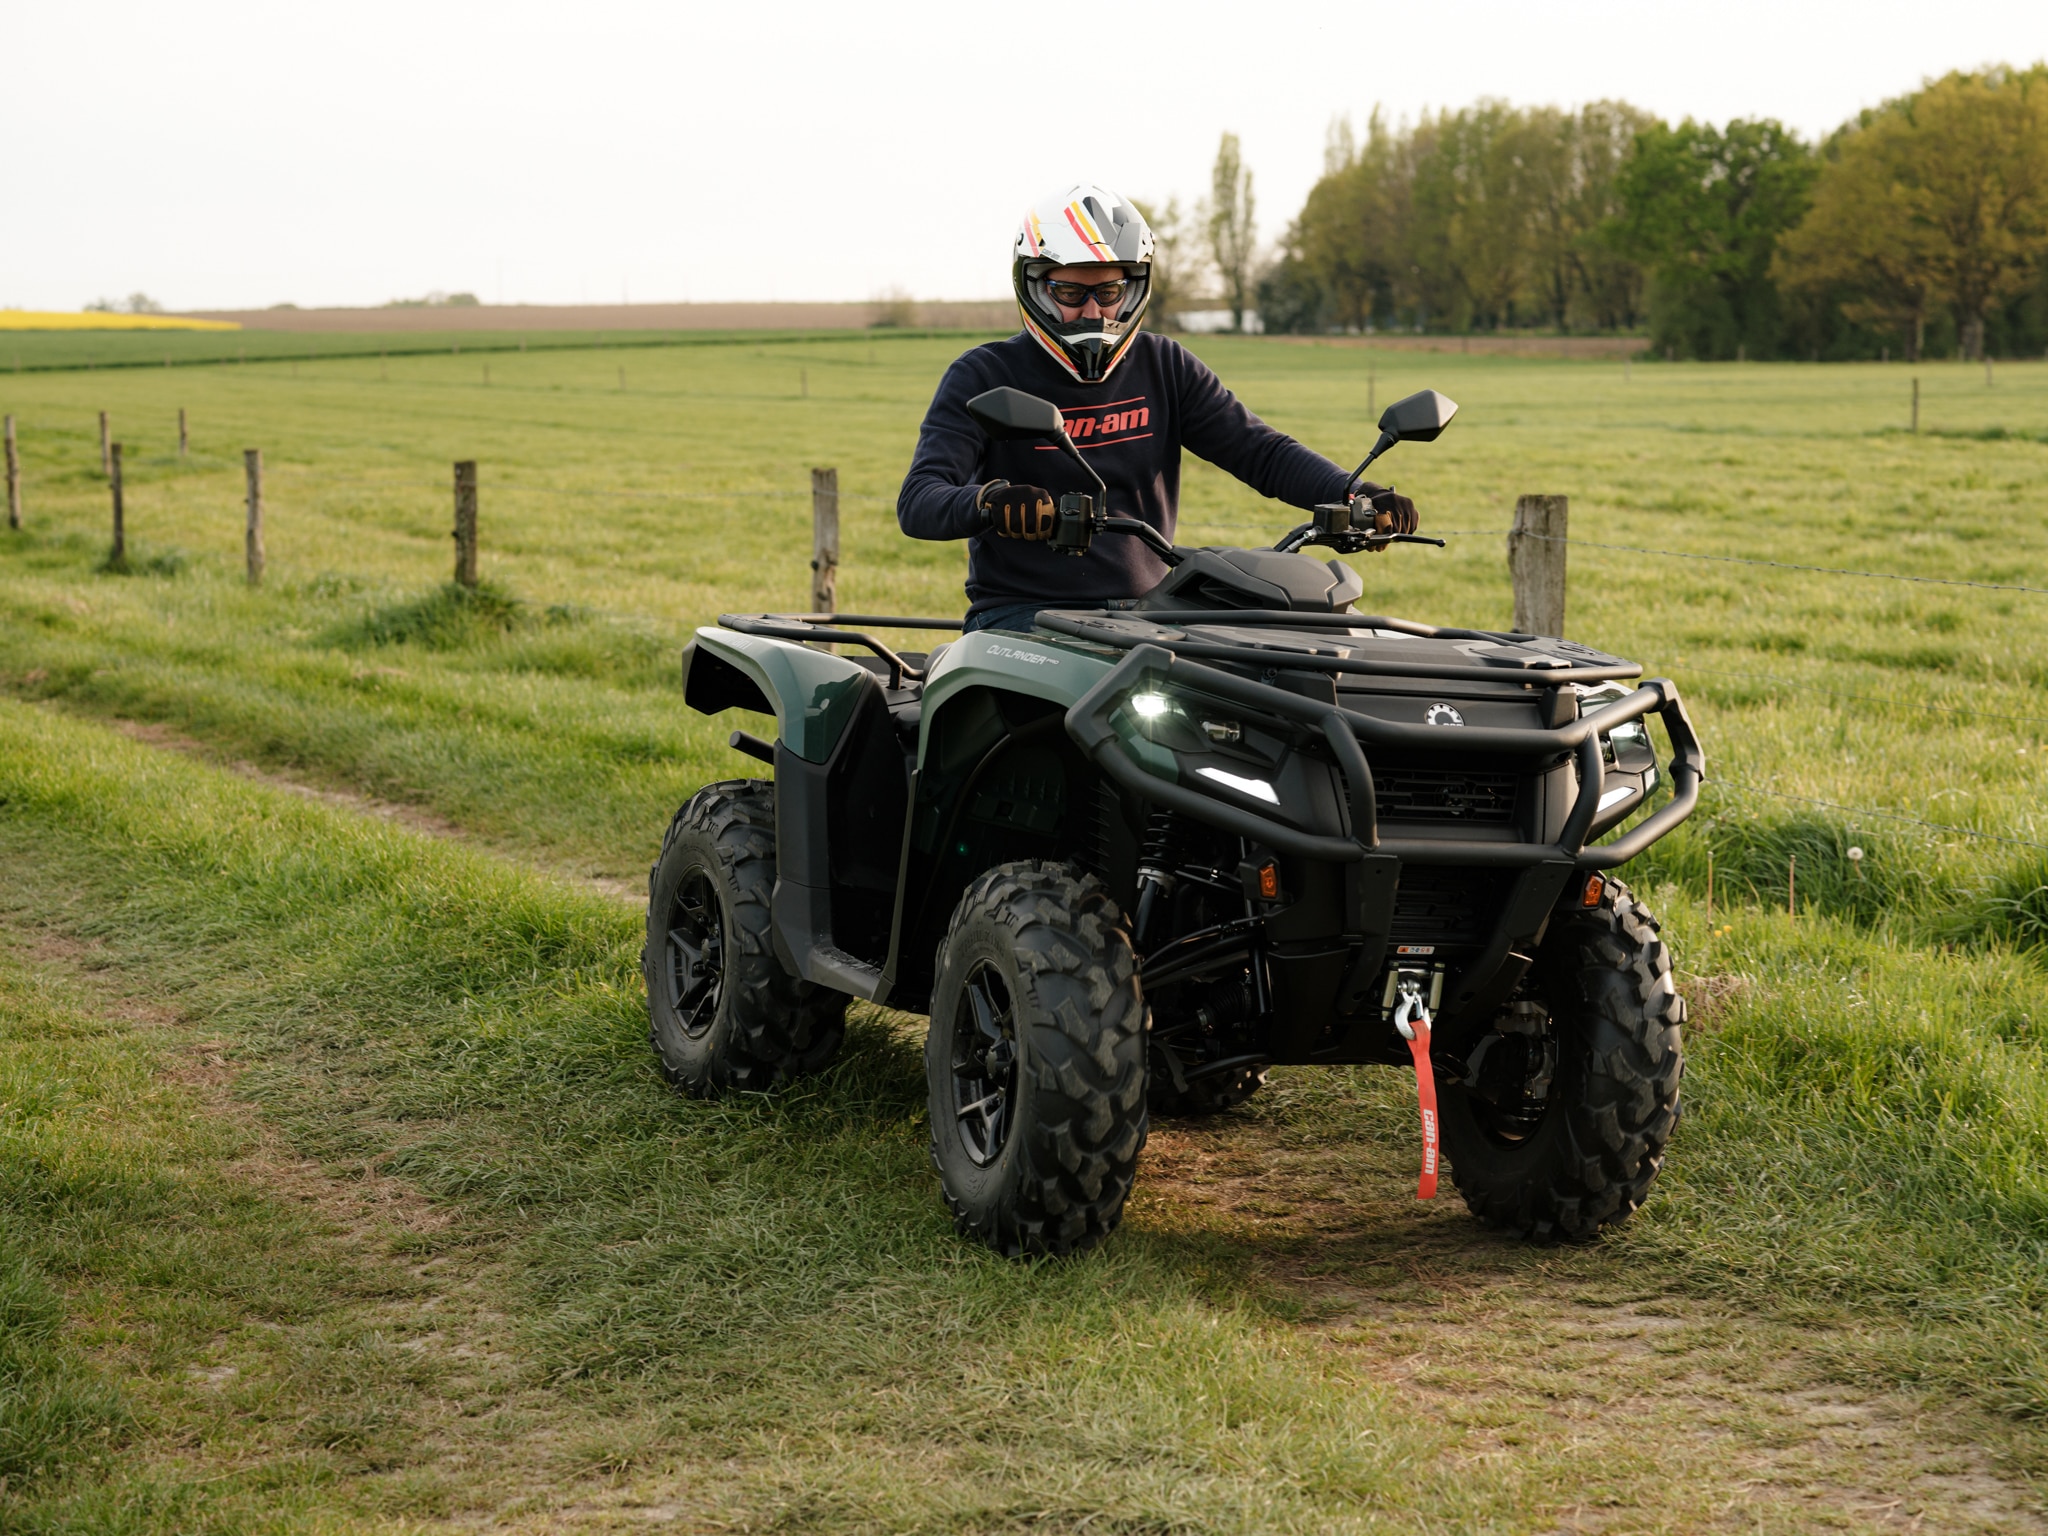 Pilota mentre guida un ATV Can-Am su un sentiero di campagna